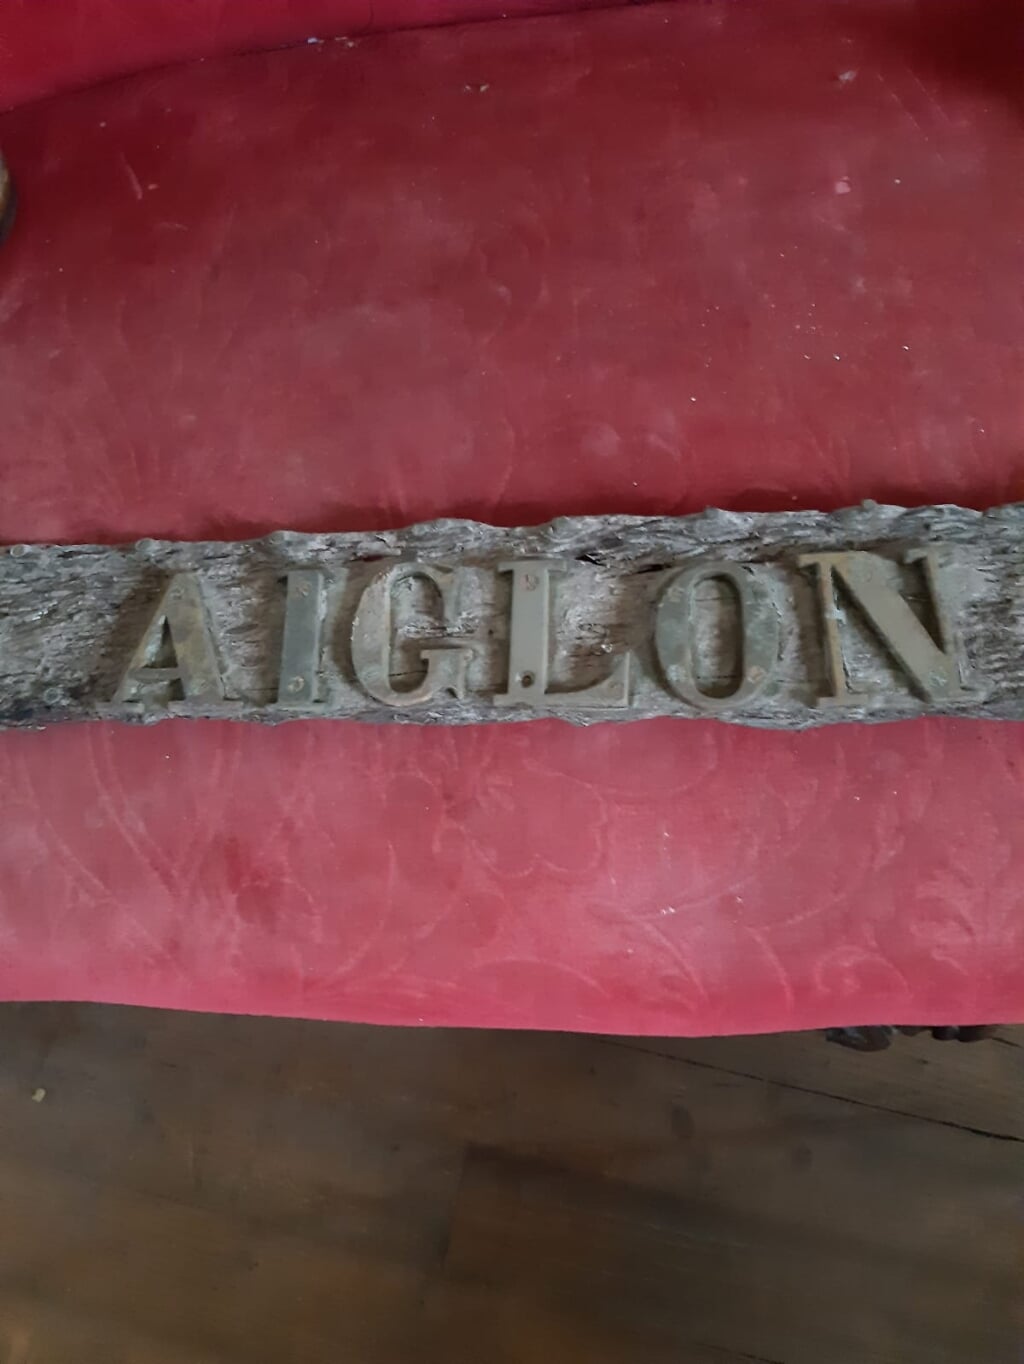 n De koperen letters 'Aiglon' op de boeg gevonden. 